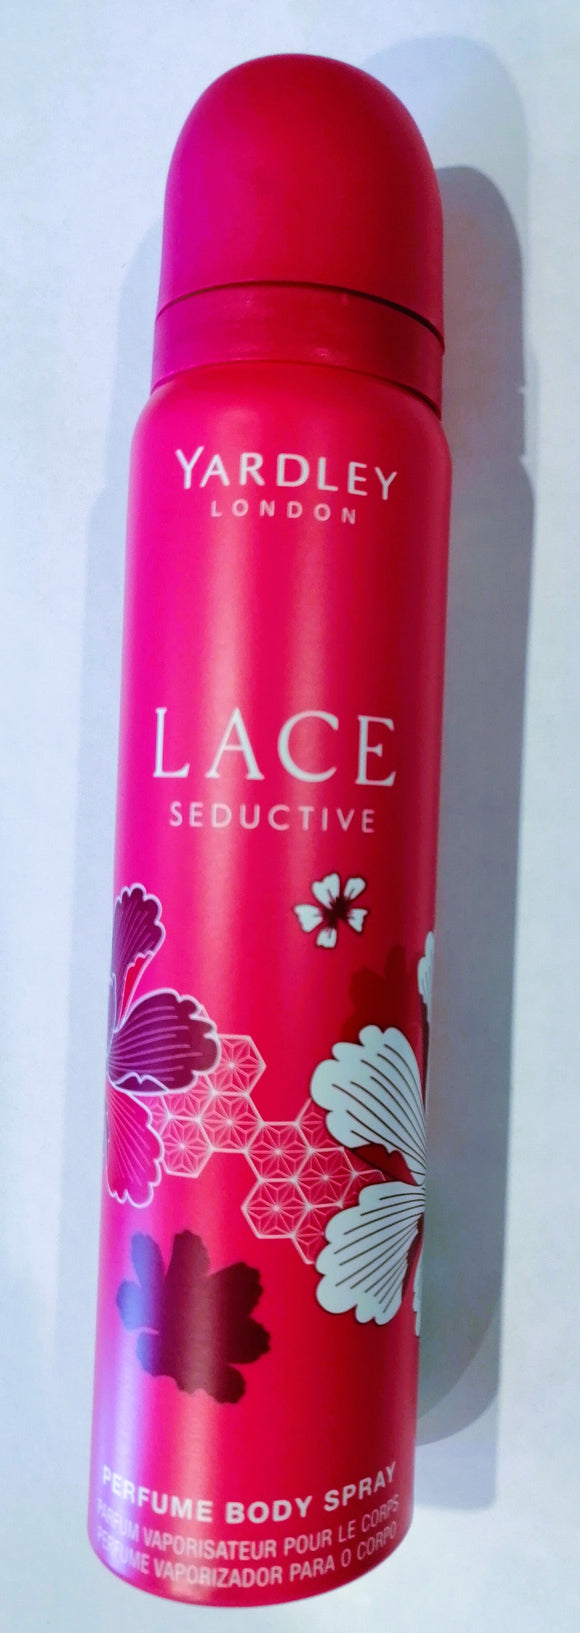 Yardley Lace Seduction Perfumed Body Spray 90ml